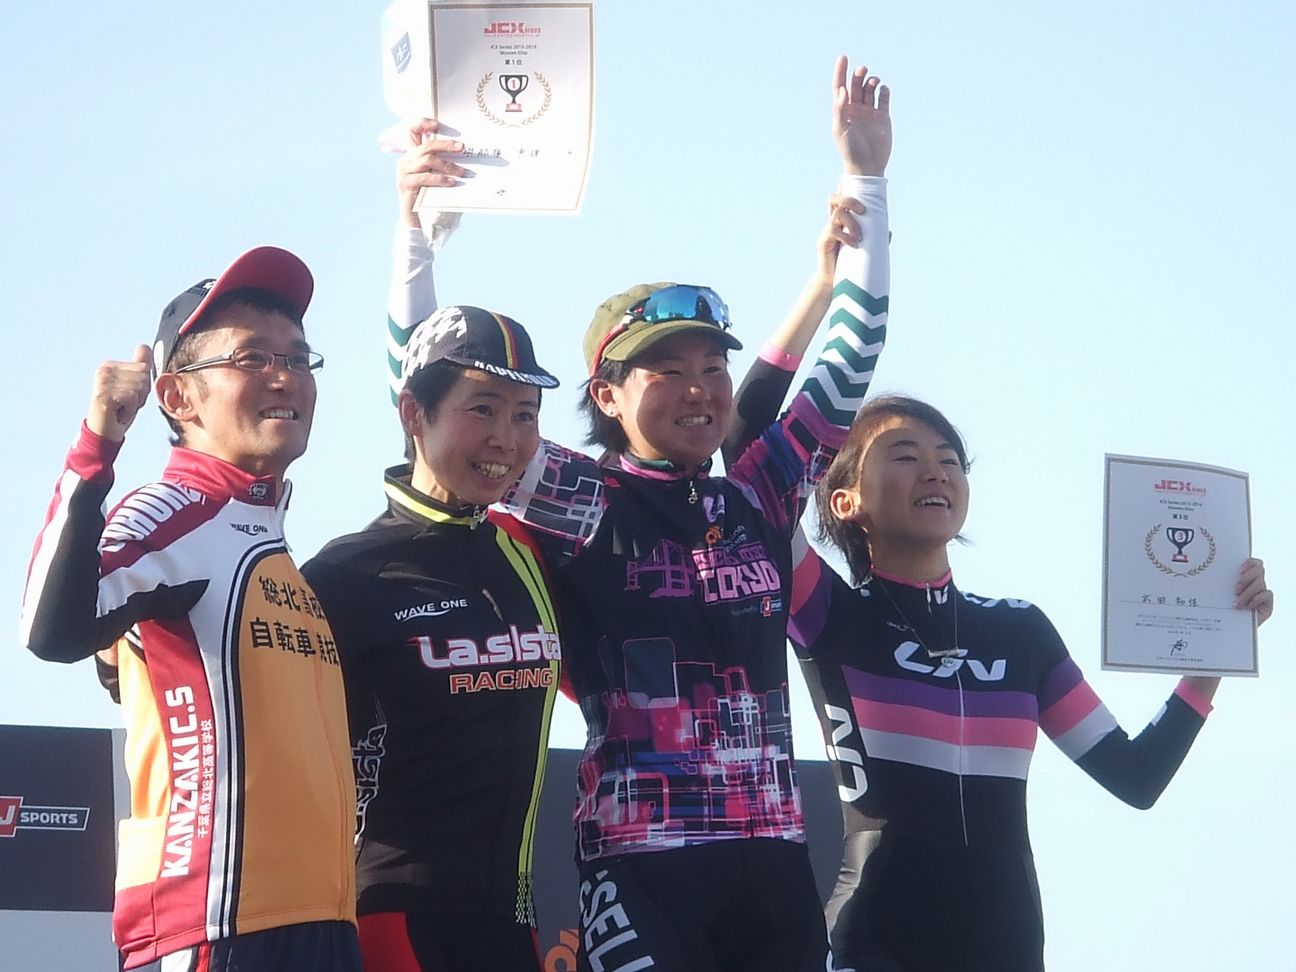 http://www.cyclocross.jp/results/JCXwomen2015-6.JPG